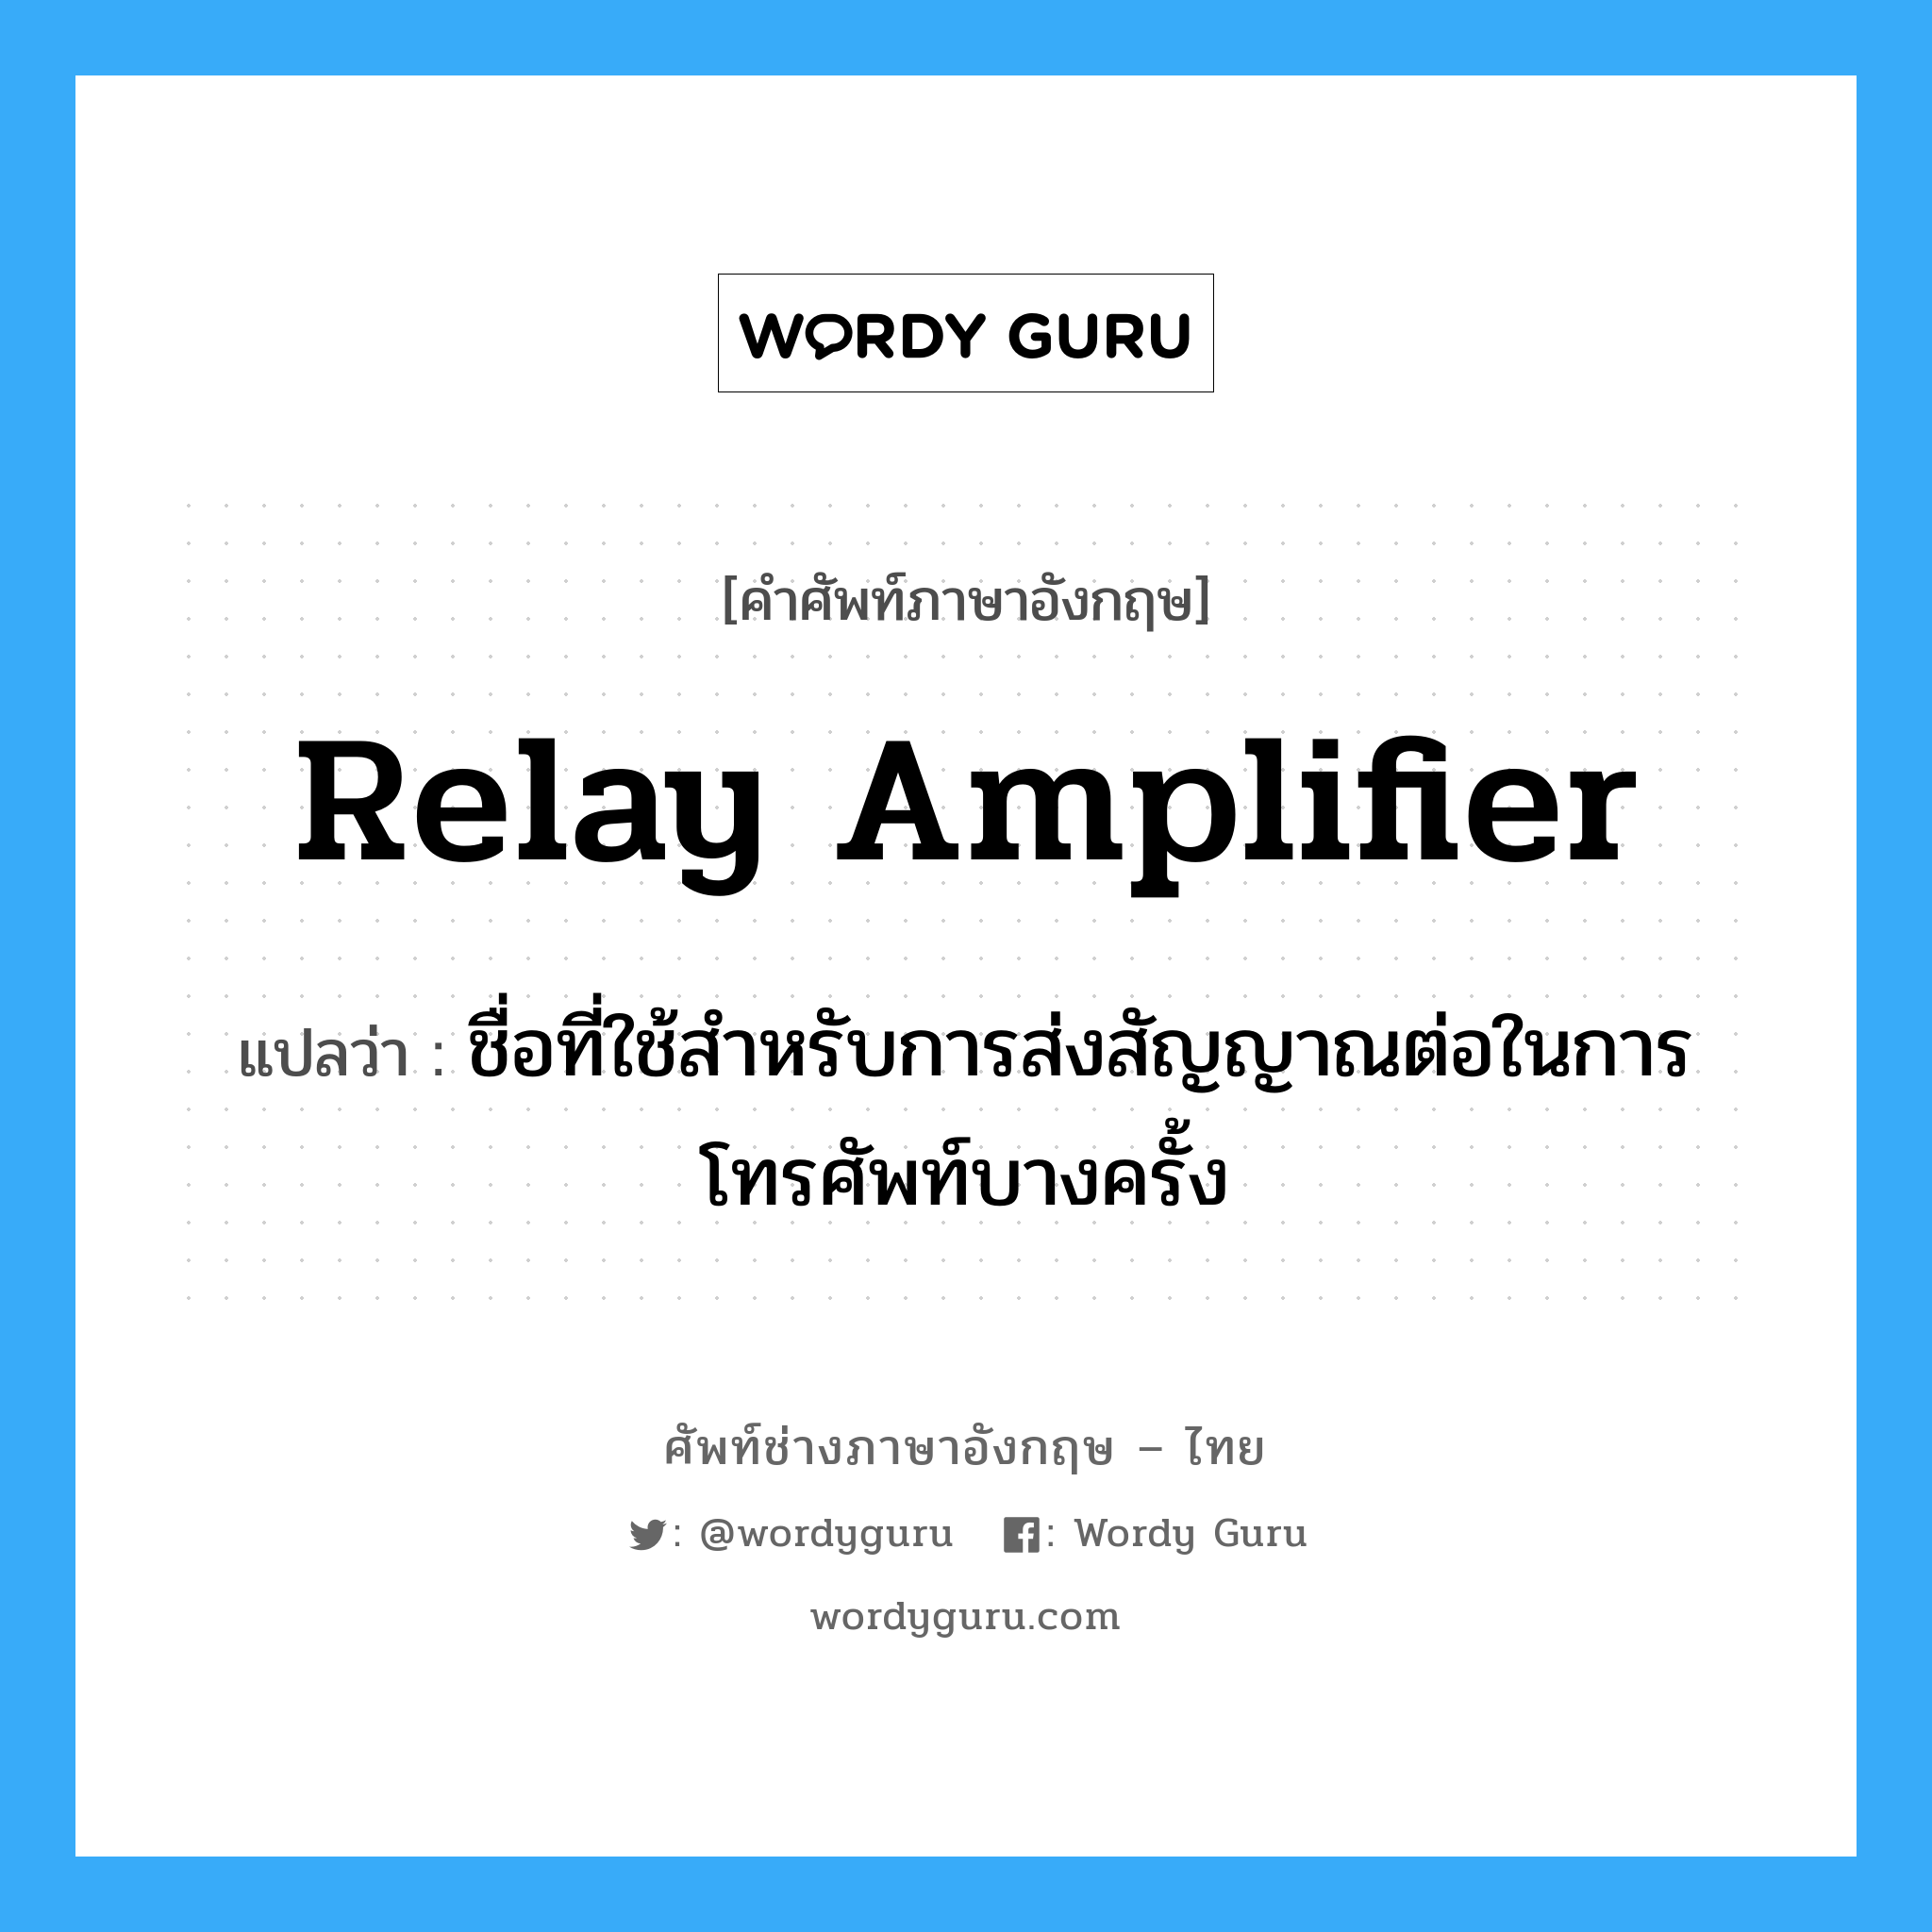 relay amplifier แปลว่า?, คำศัพท์ช่างภาษาอังกฤษ - ไทย relay amplifier คำศัพท์ภาษาอังกฤษ relay amplifier แปลว่า ชื่อที่ใช้สำหรับการส่งสัญญาณต่อในการโทรศัพท์บางครั้ง